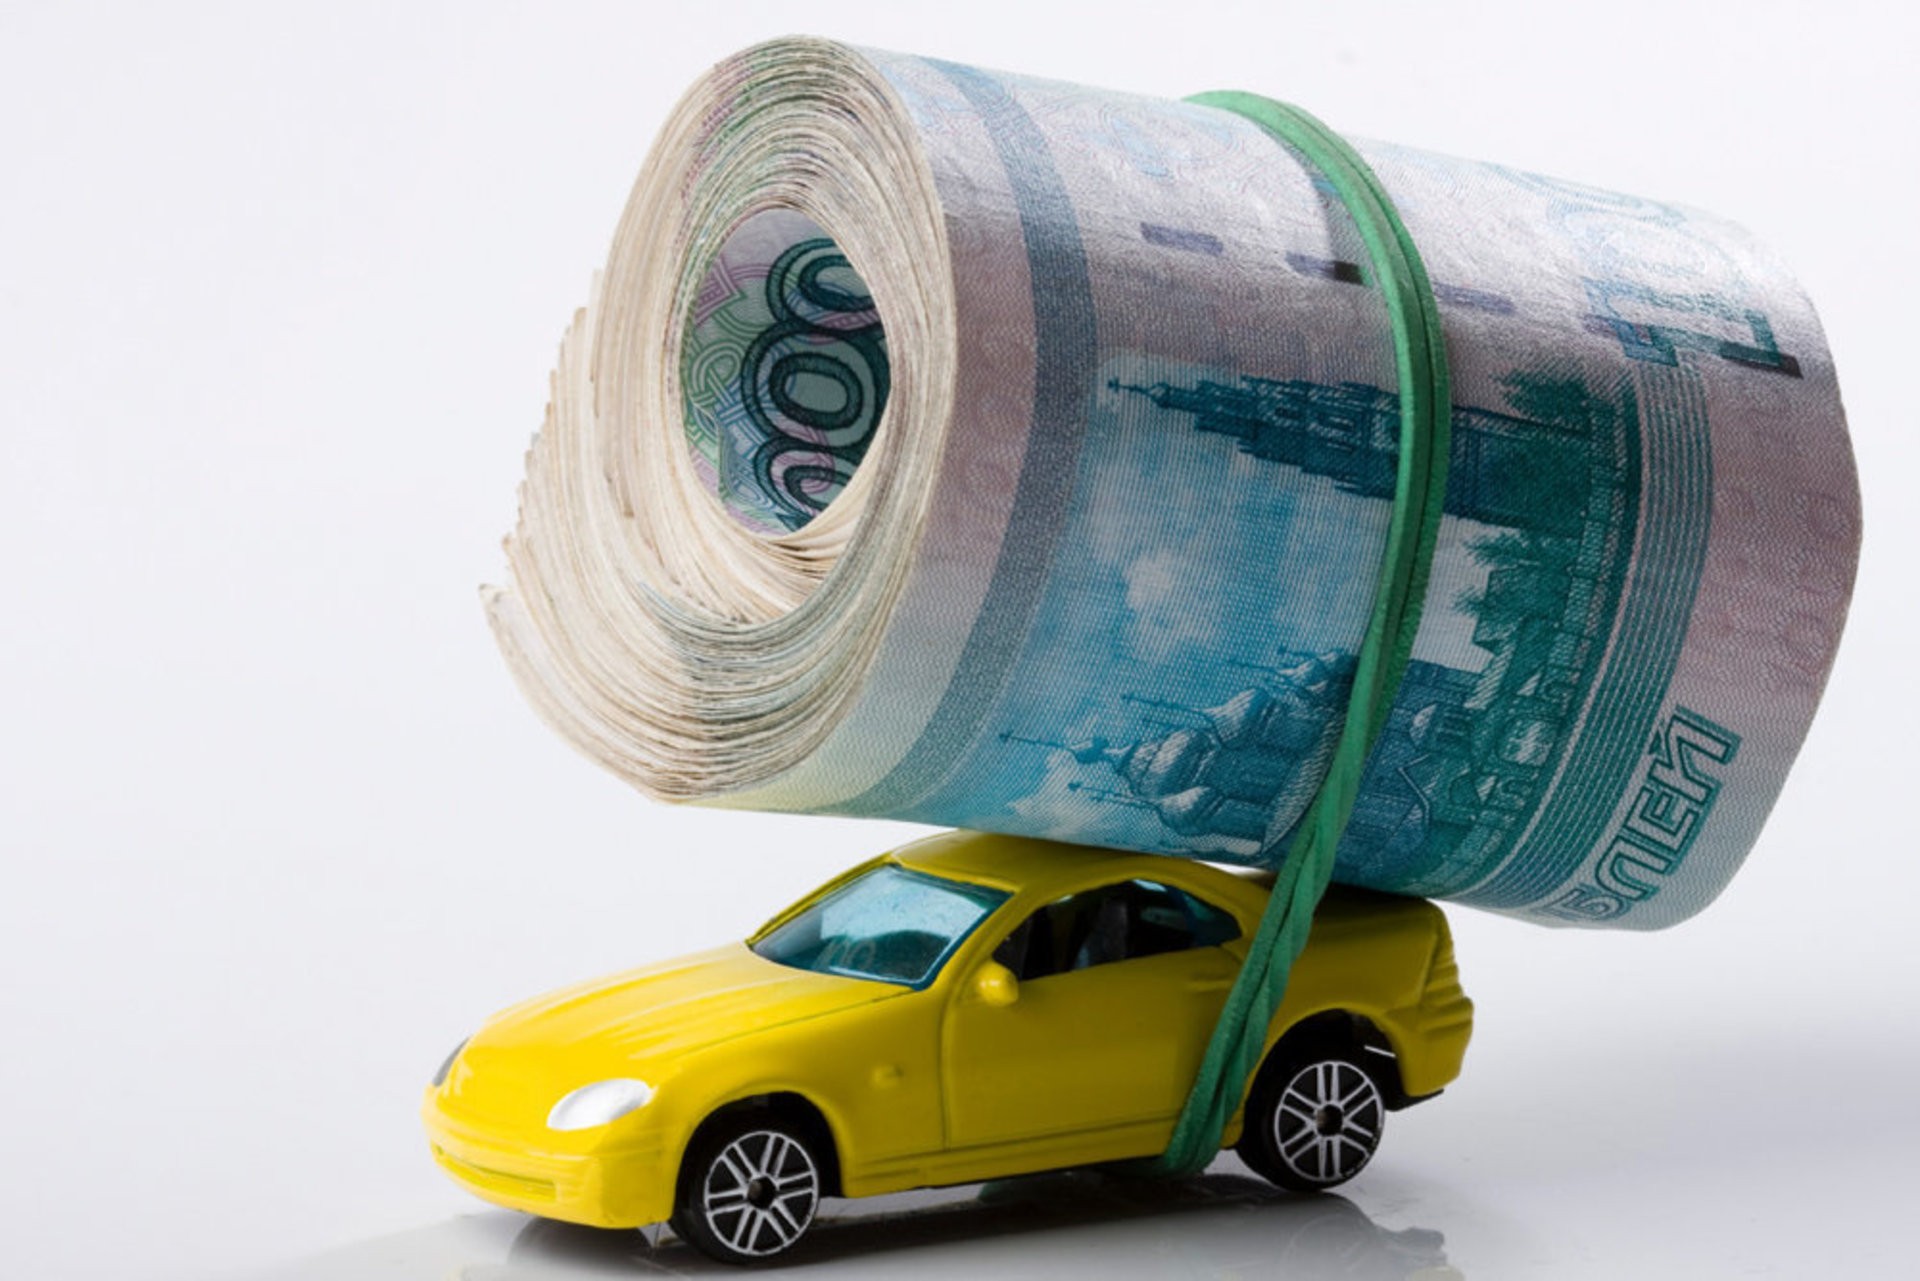 Гениальные лайфхаки для экономии денег на автомобильном техобслуживании